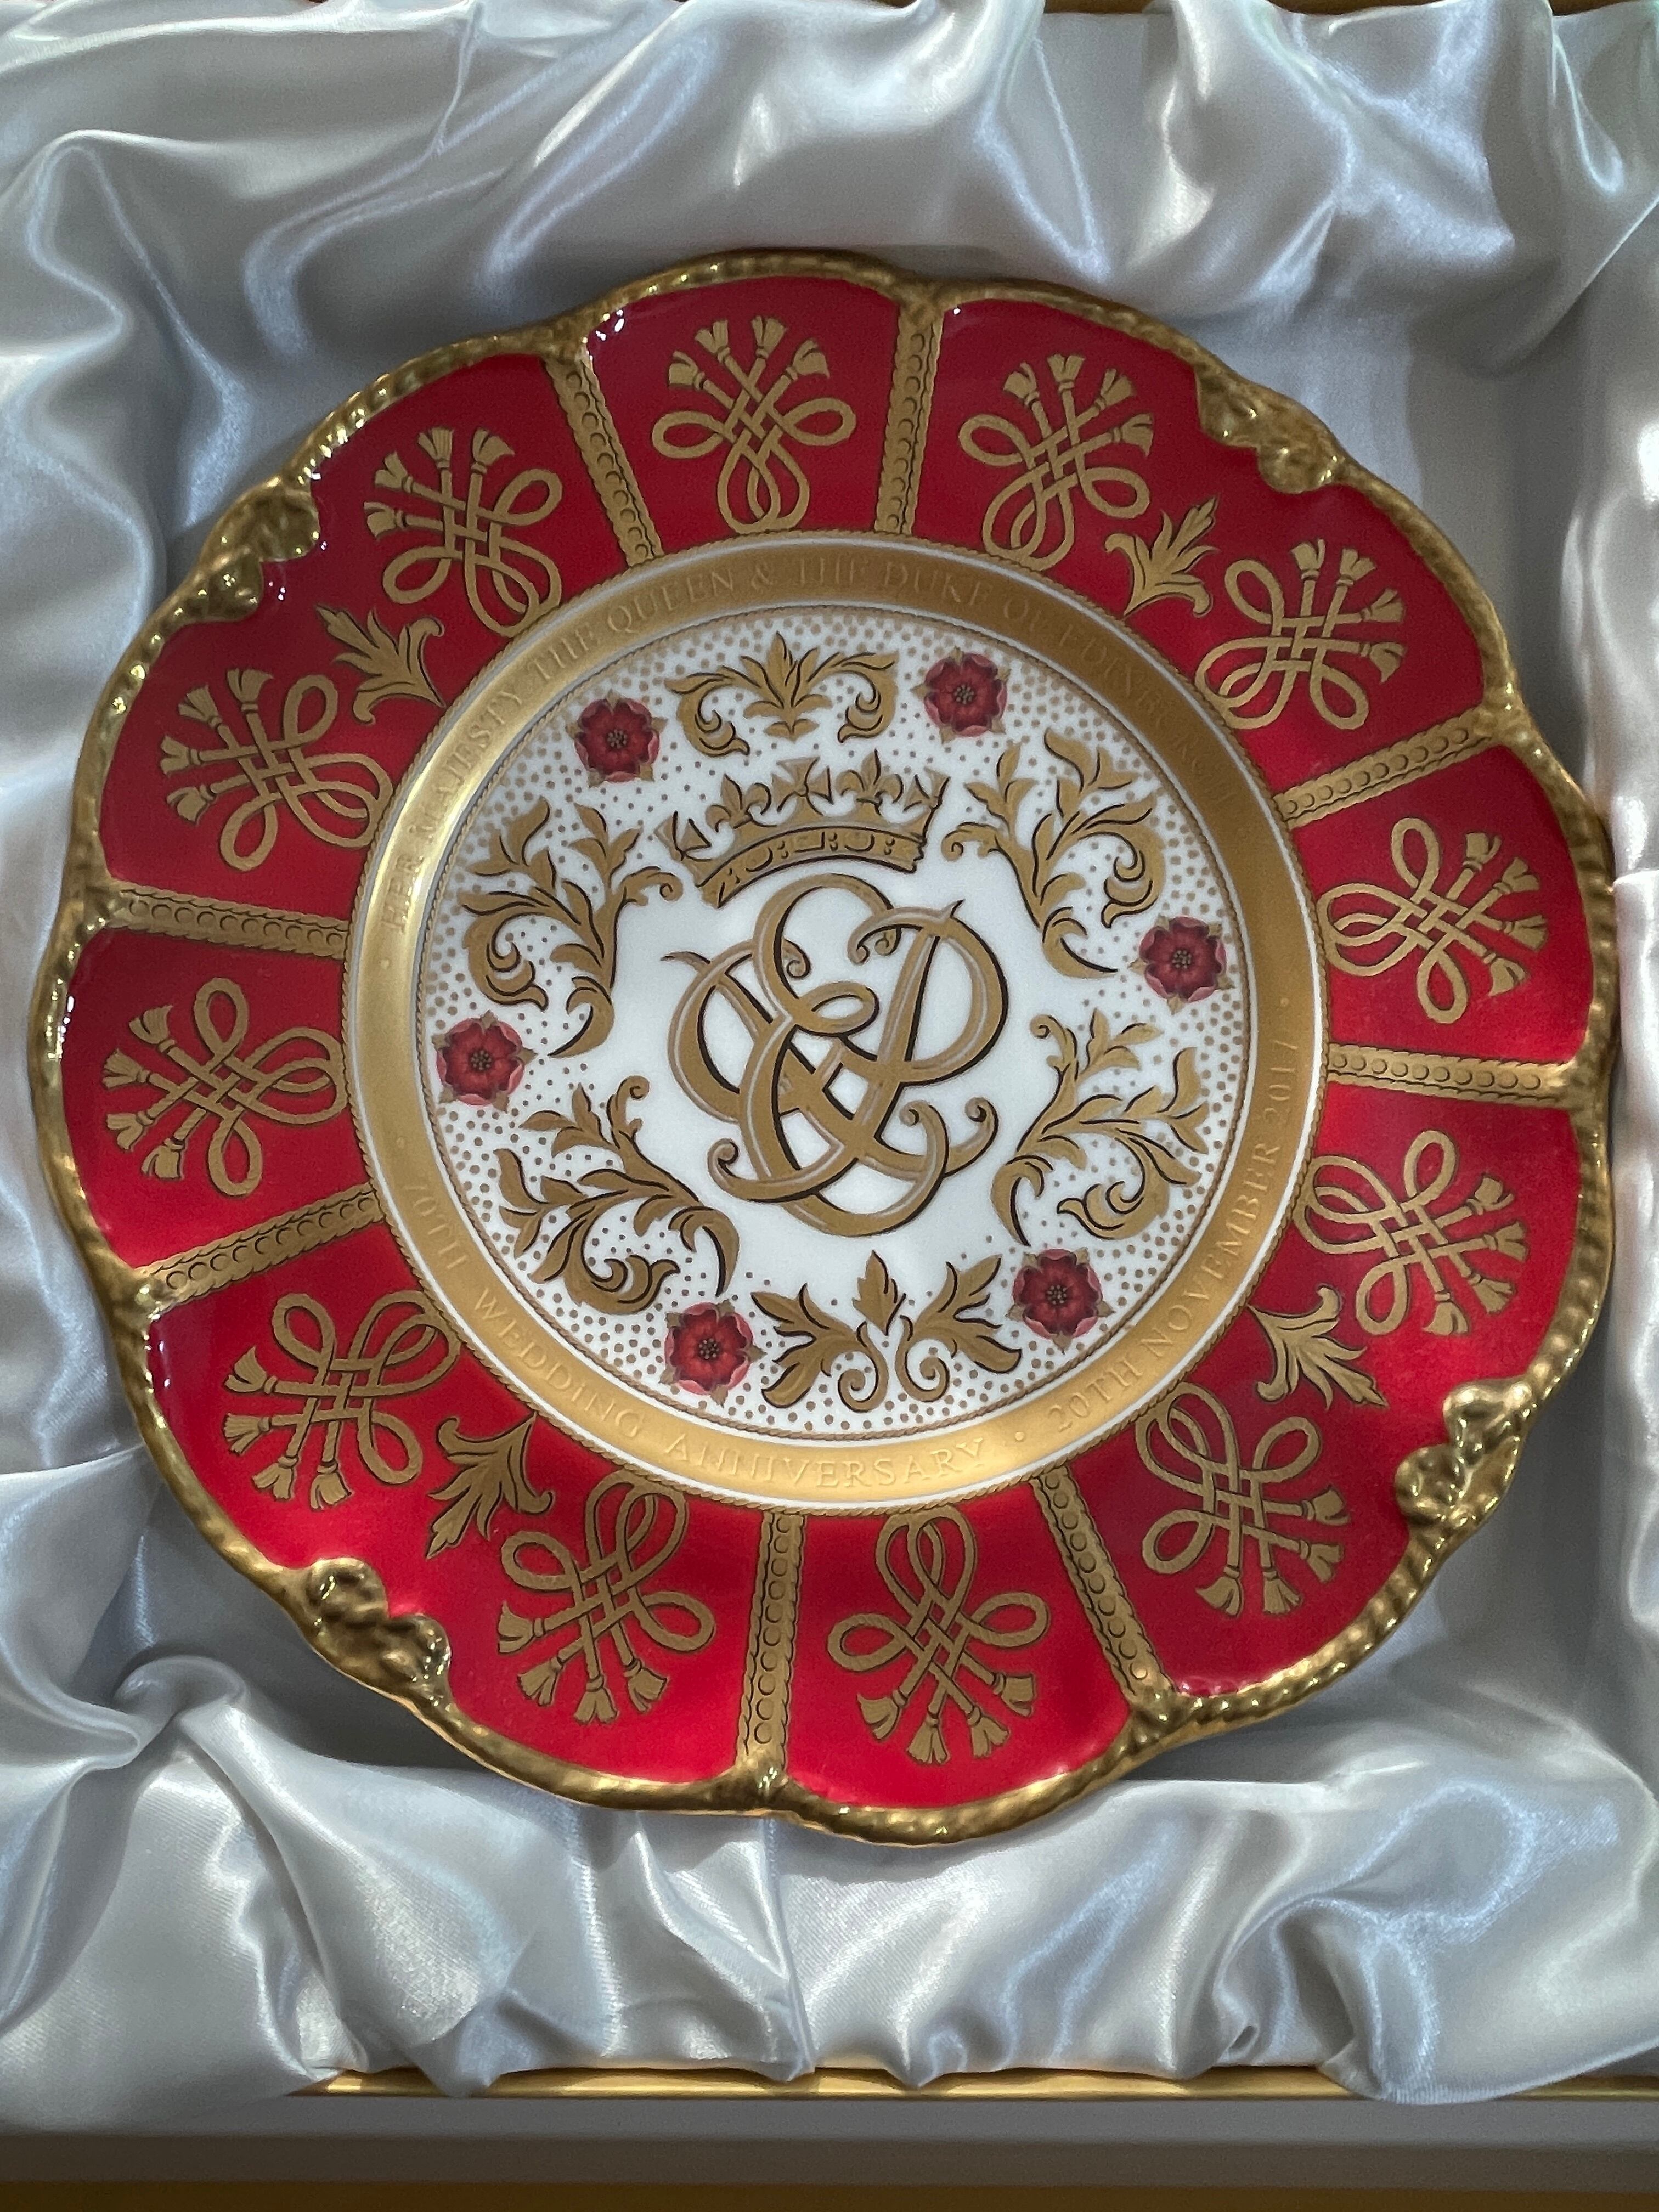 『バッキンガムパレス』エリザベス女王 70th 結婚記念 プレート  Queen Elizabeth 70th Wedding Anniversary Collectible Plate